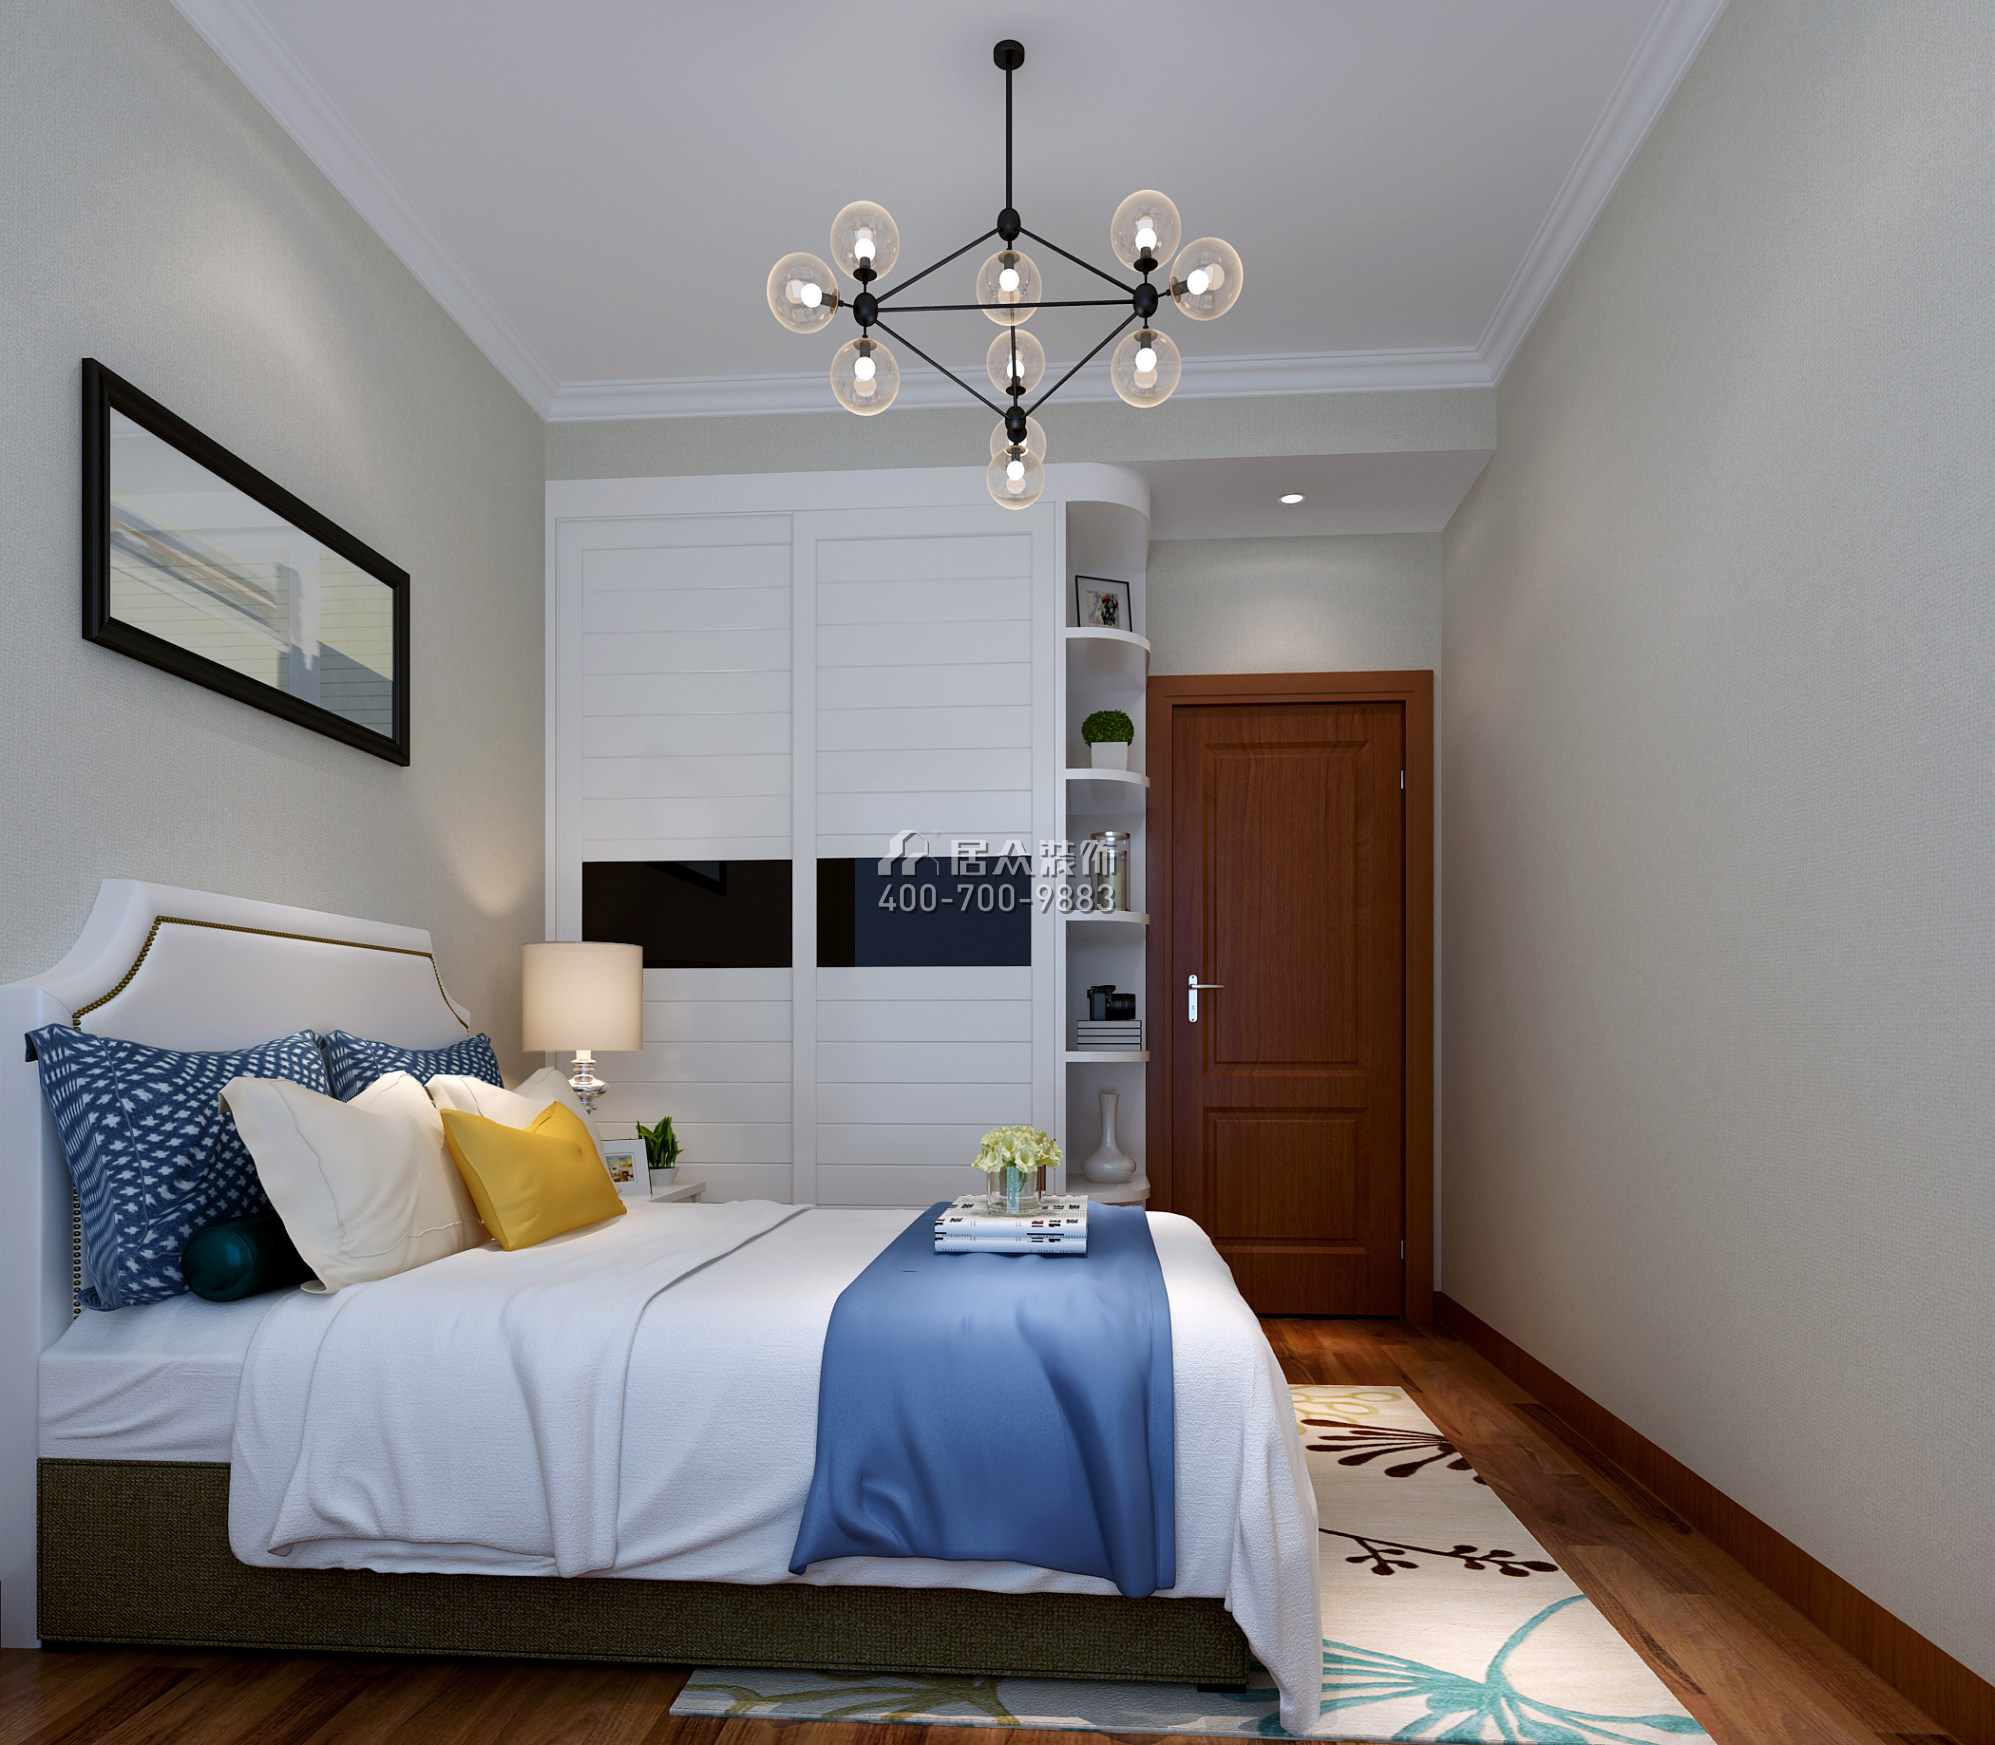 同和悦园139平方米中式风格平层户型卧室装修效果图